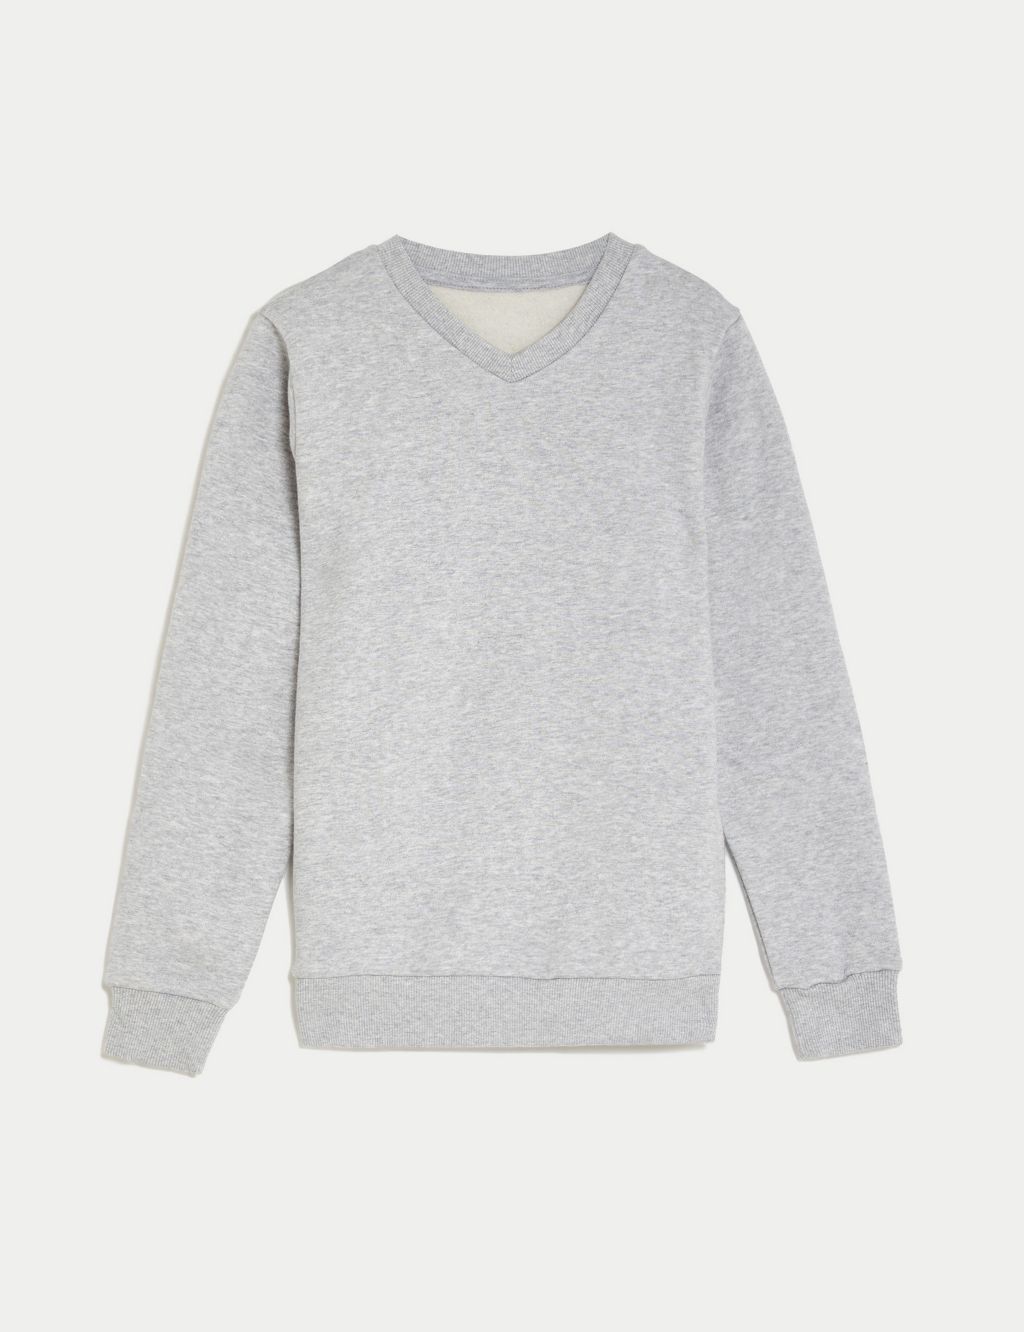 Unisex Cotton V-Neck Sweatshirt (2-16 Yrs) image 2